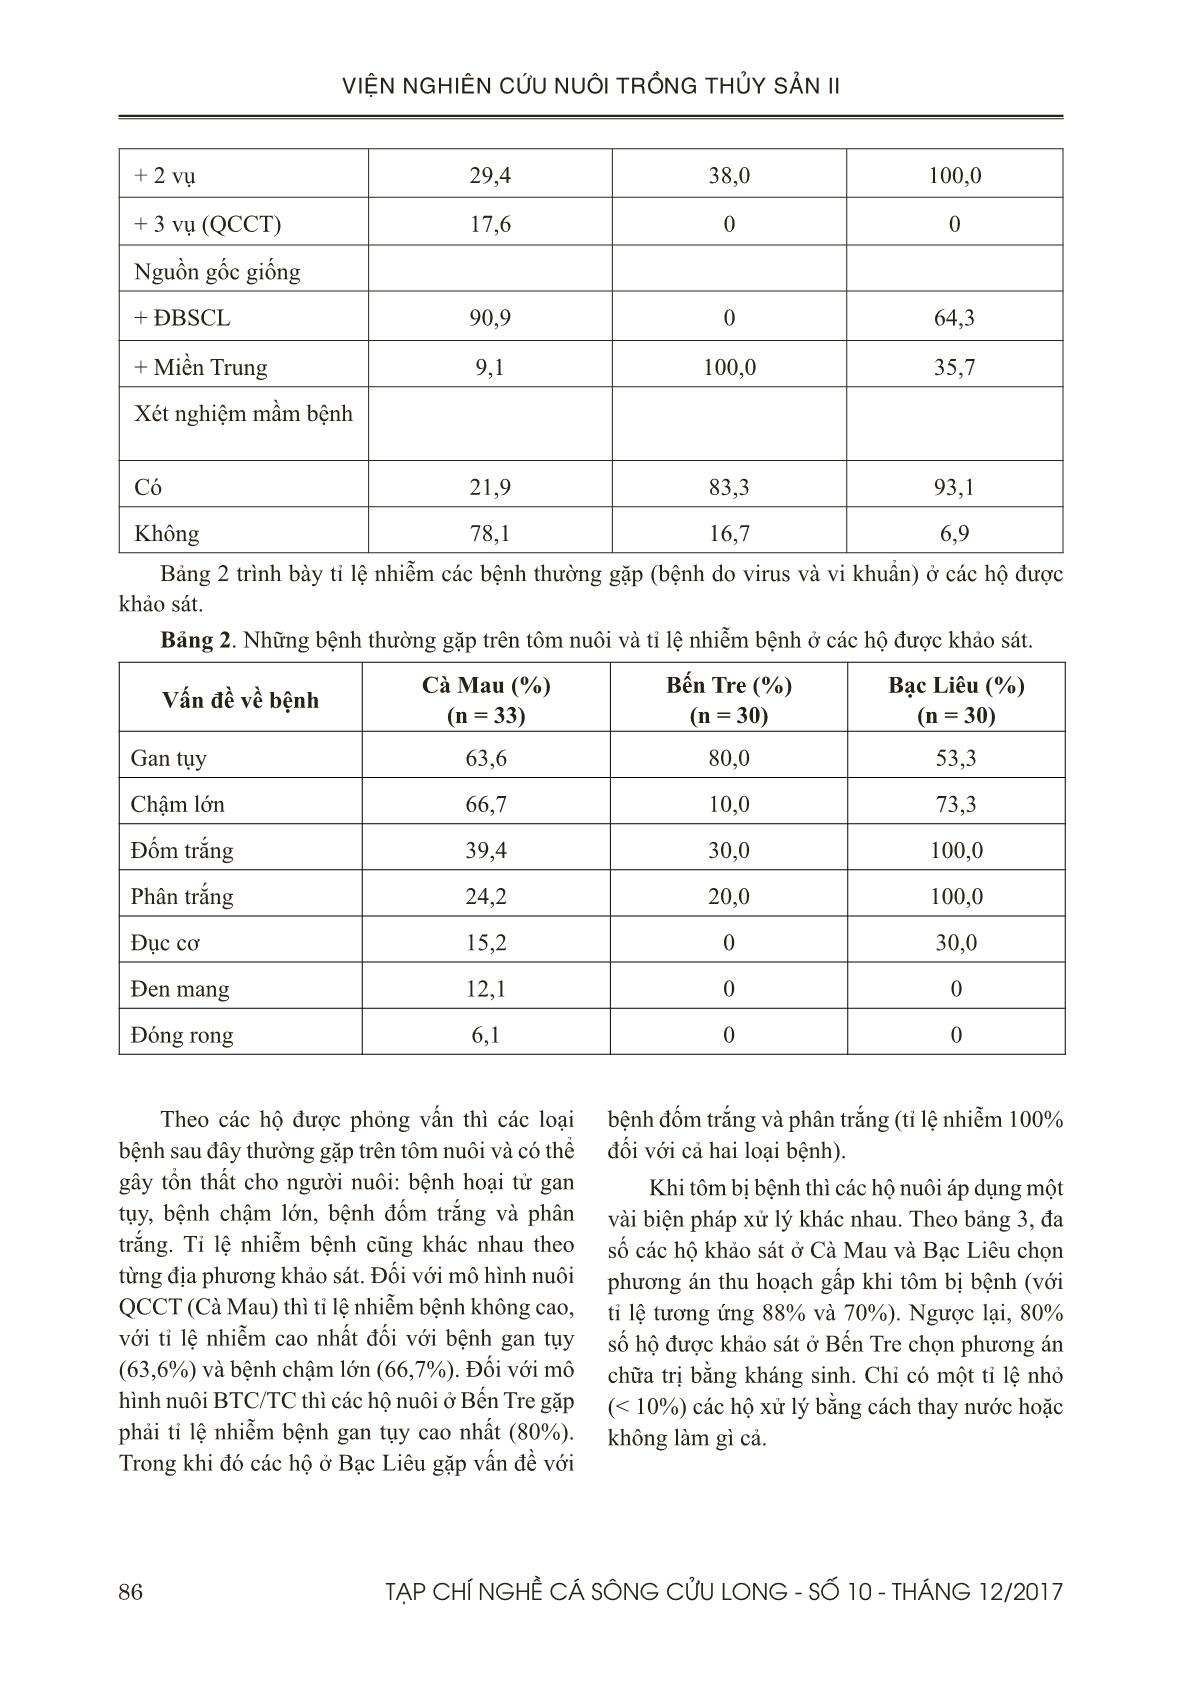 Đánh giá tình hình sử dụng chế phẩm vi sinh trong nuôi tôm ở đồng bằng sông Cửu Long trang 4